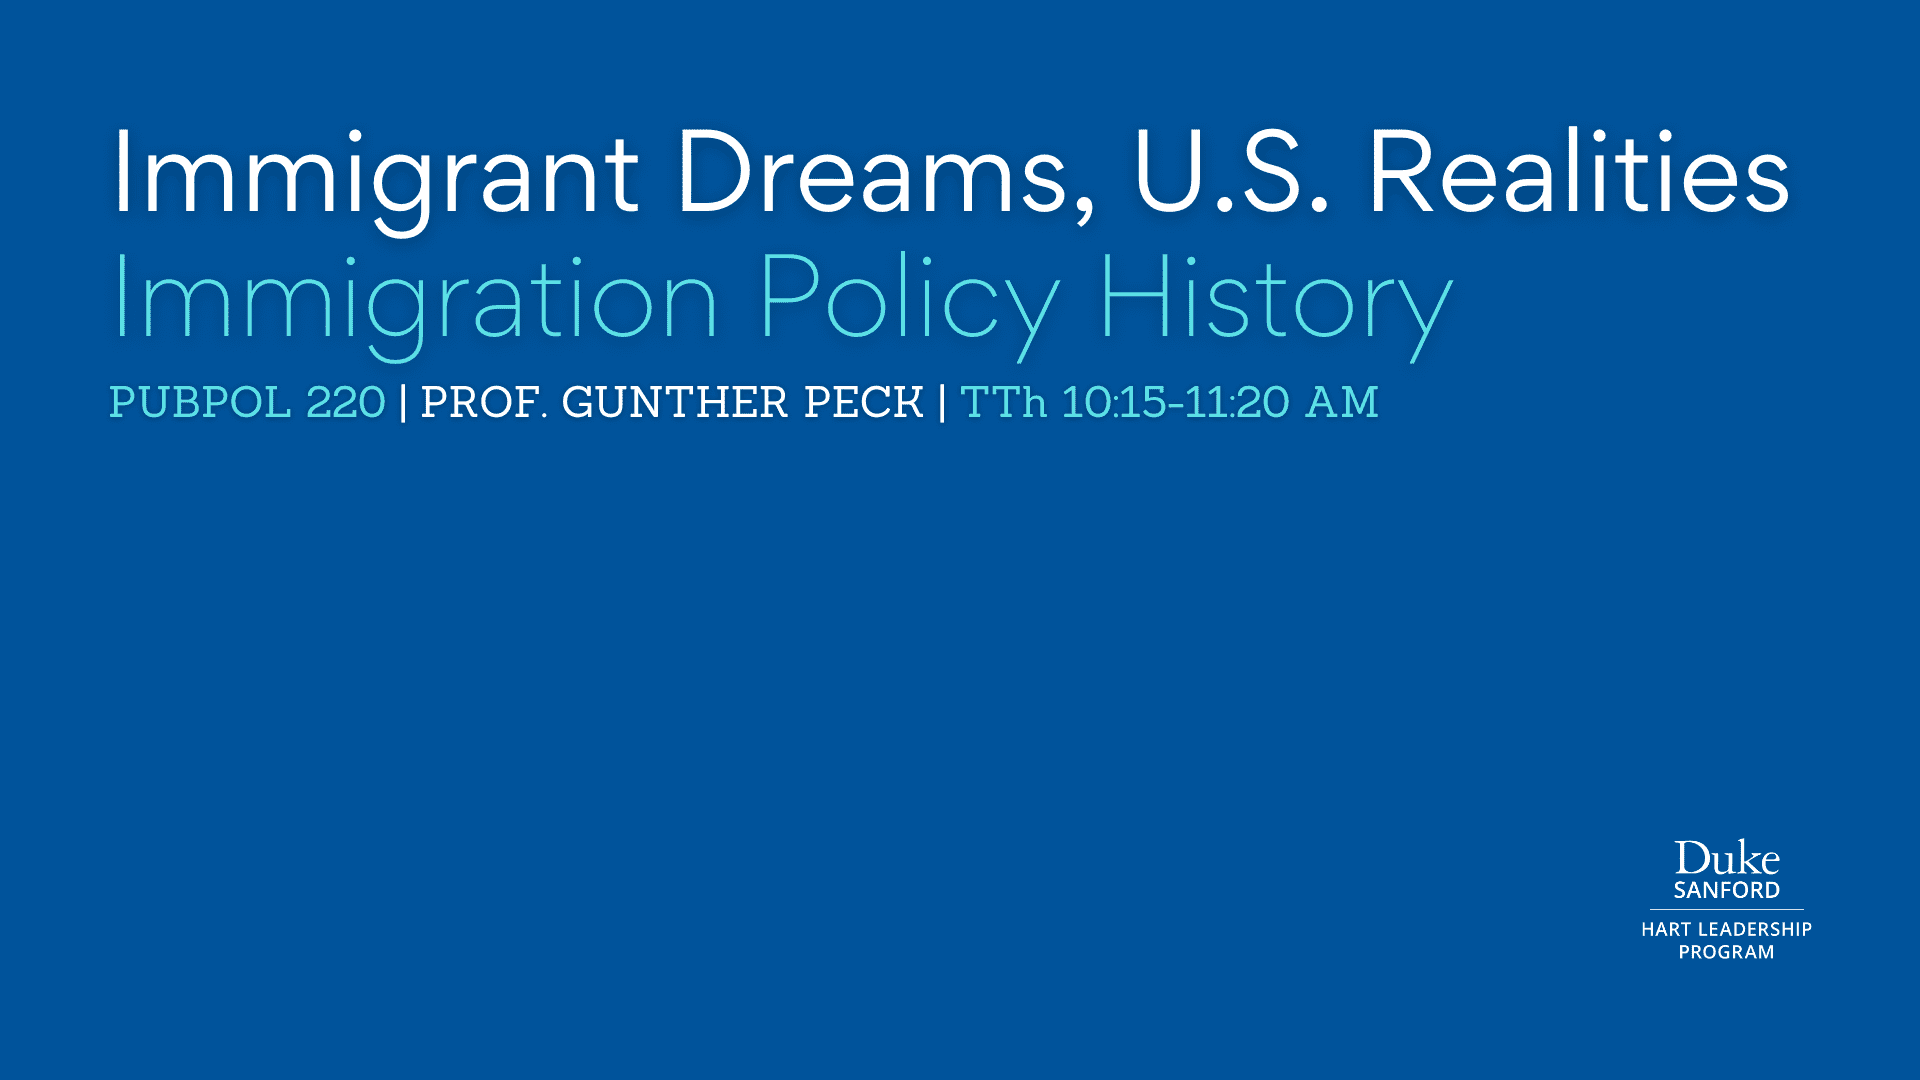 PubPol 220: Immigrant Dreams, U.S. Realities